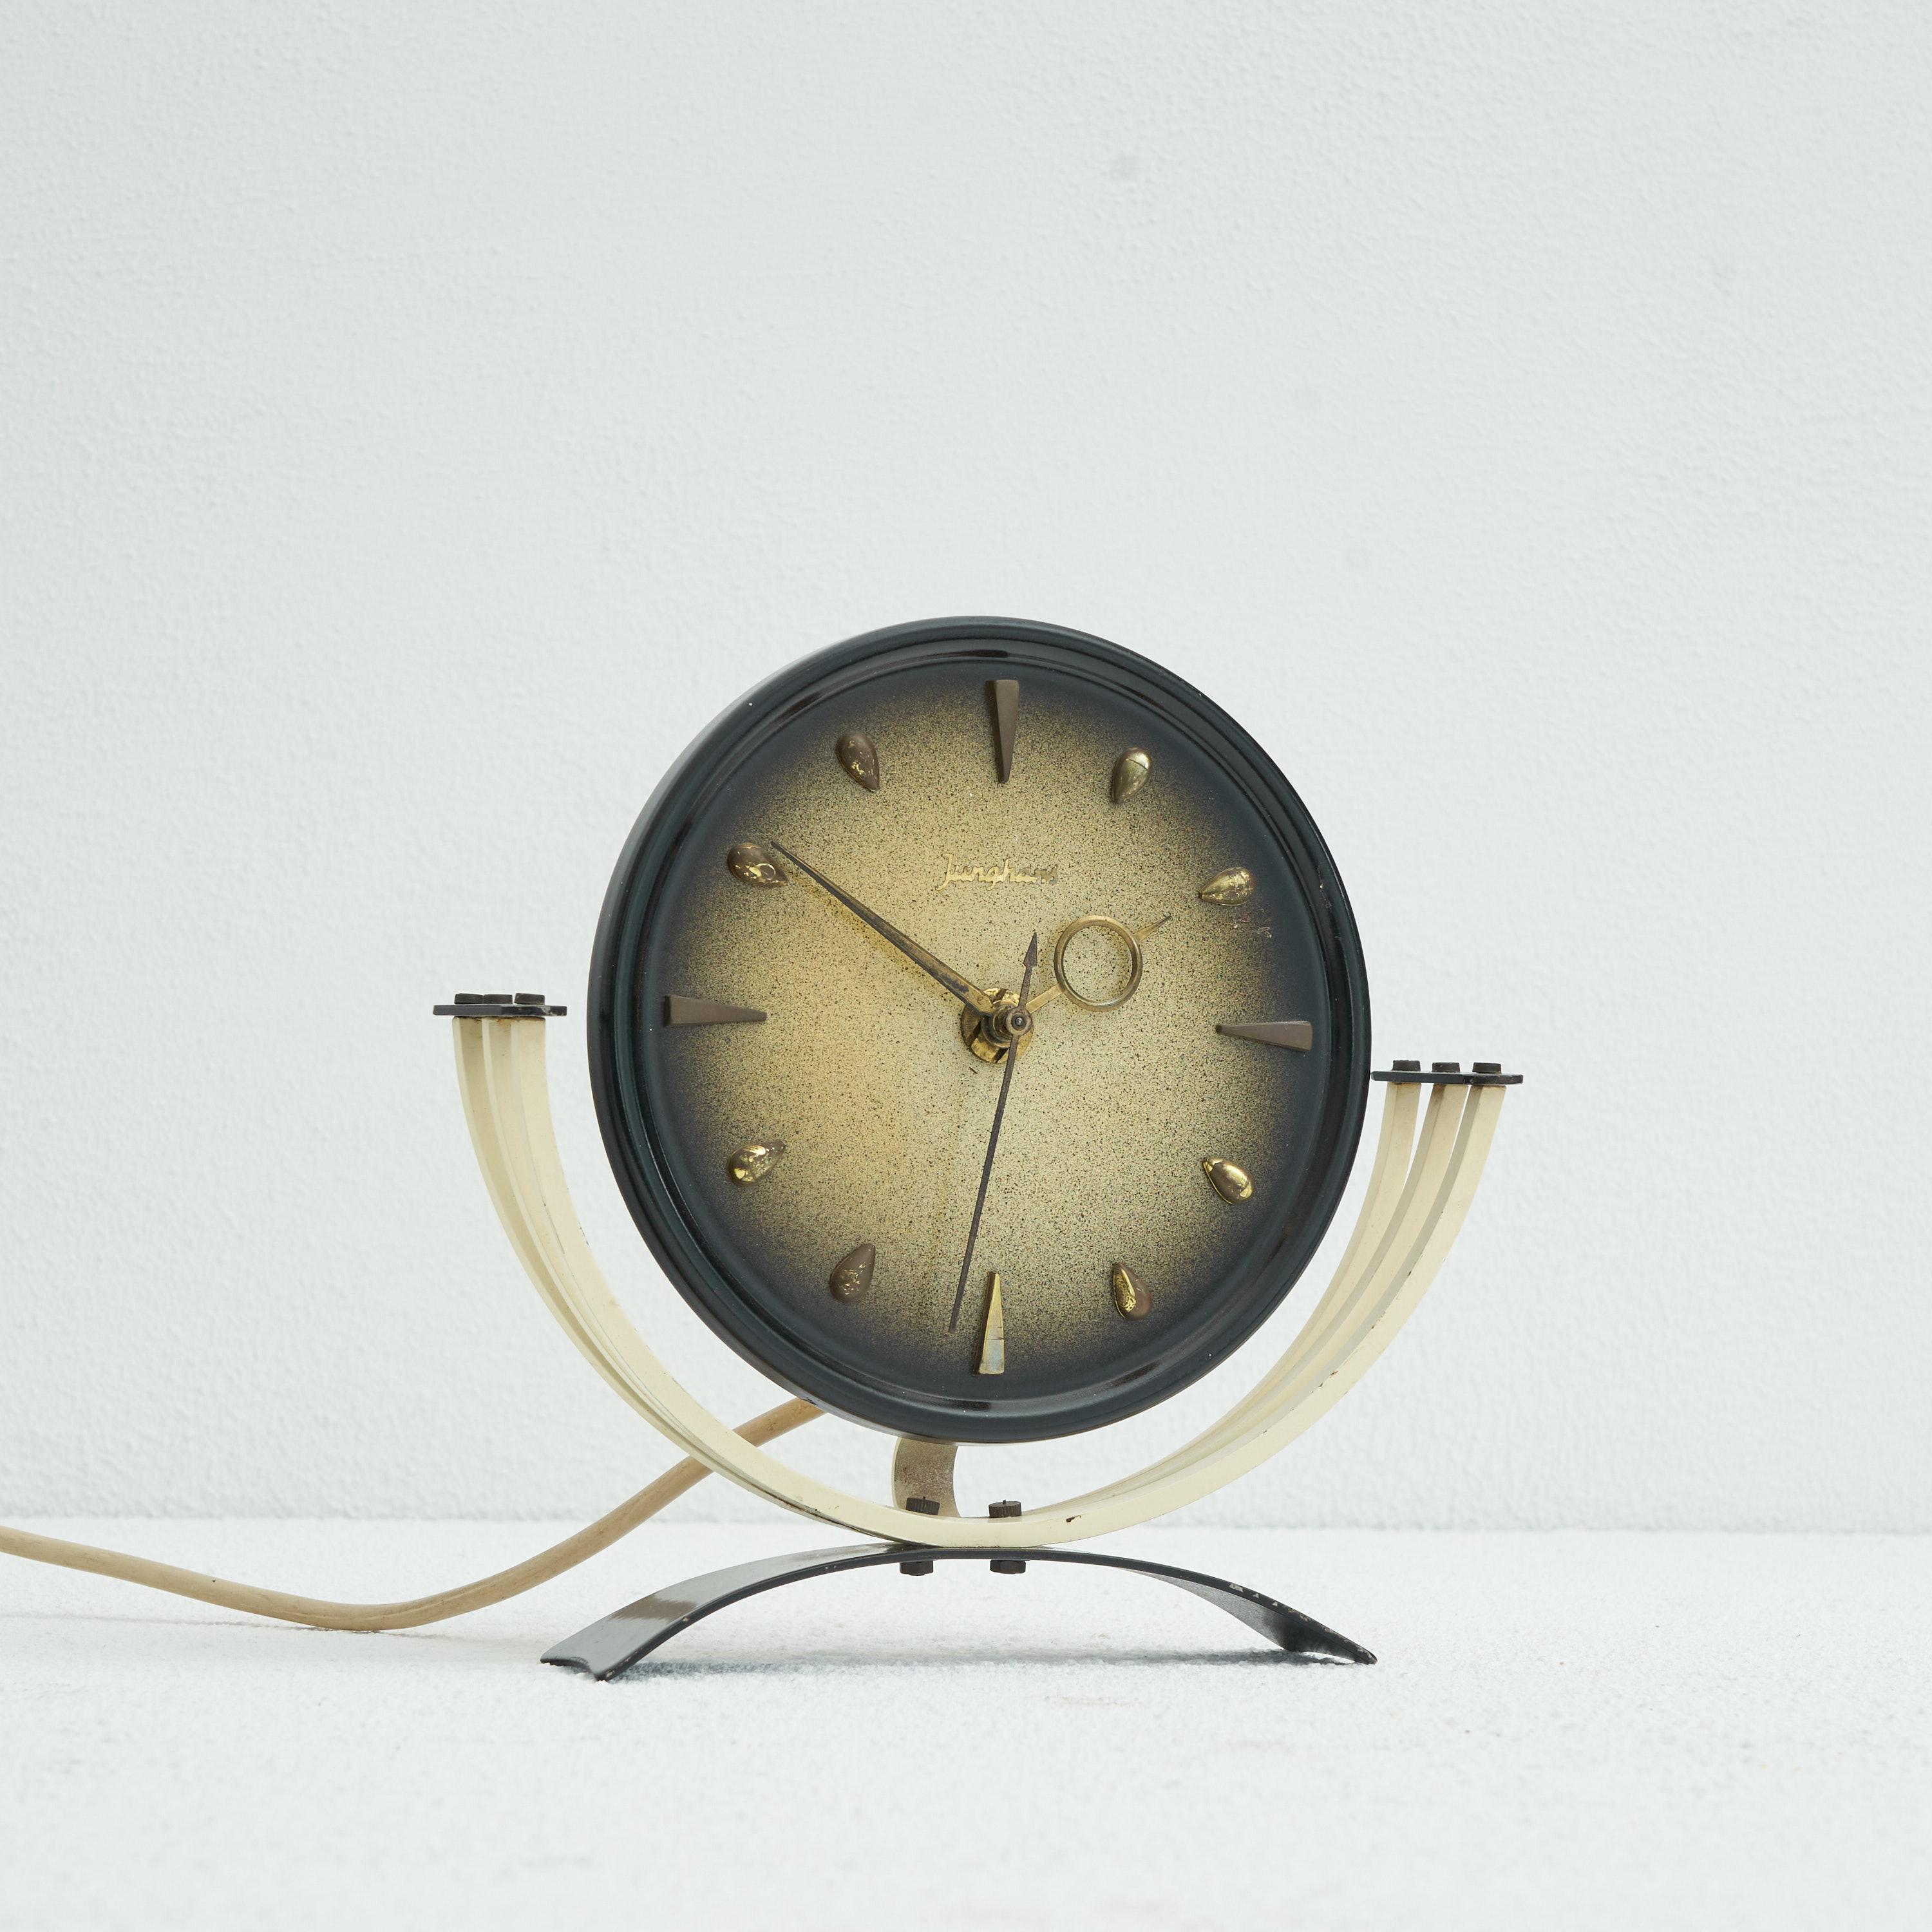 Horloge de table Junghans du milieu du siècle en métal et laiton. Allemagne, années 1950

Horloge de table décorative et élégante du milieu du siècle dernier, fabriquée par le célèbre horloger Junghans. D'un design très délicat et joyeux, cette